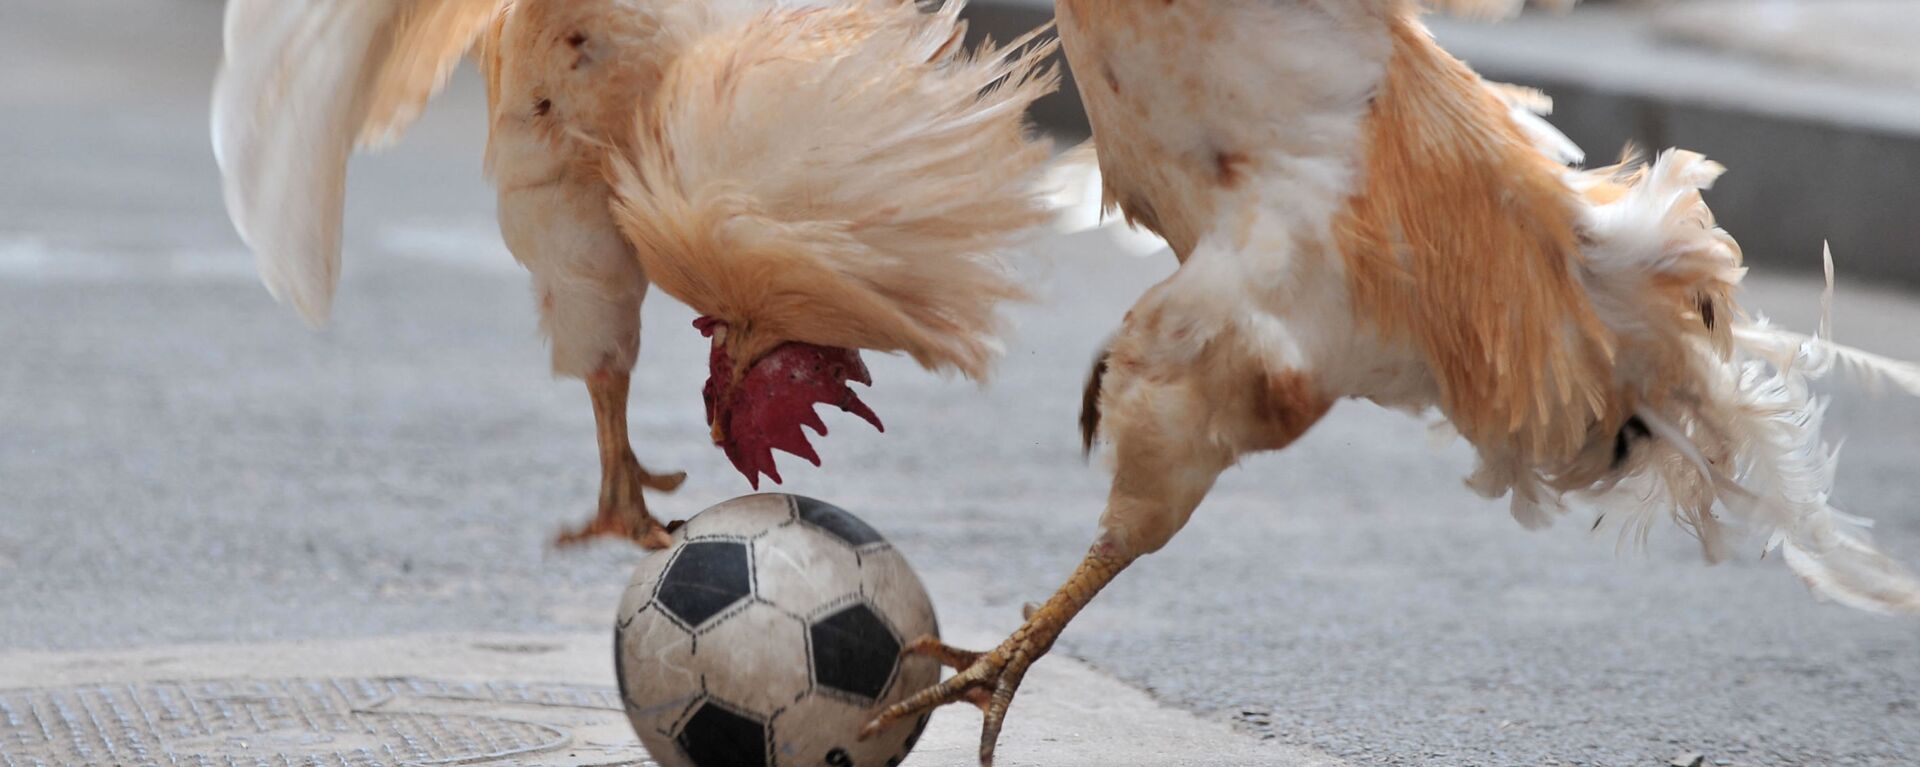 Два петуха дерутся за мяч во время шоу футбольного матча с цыплятами в Шэньяне, Китай - Sputnik Mundo, 1920, 02.07.2021